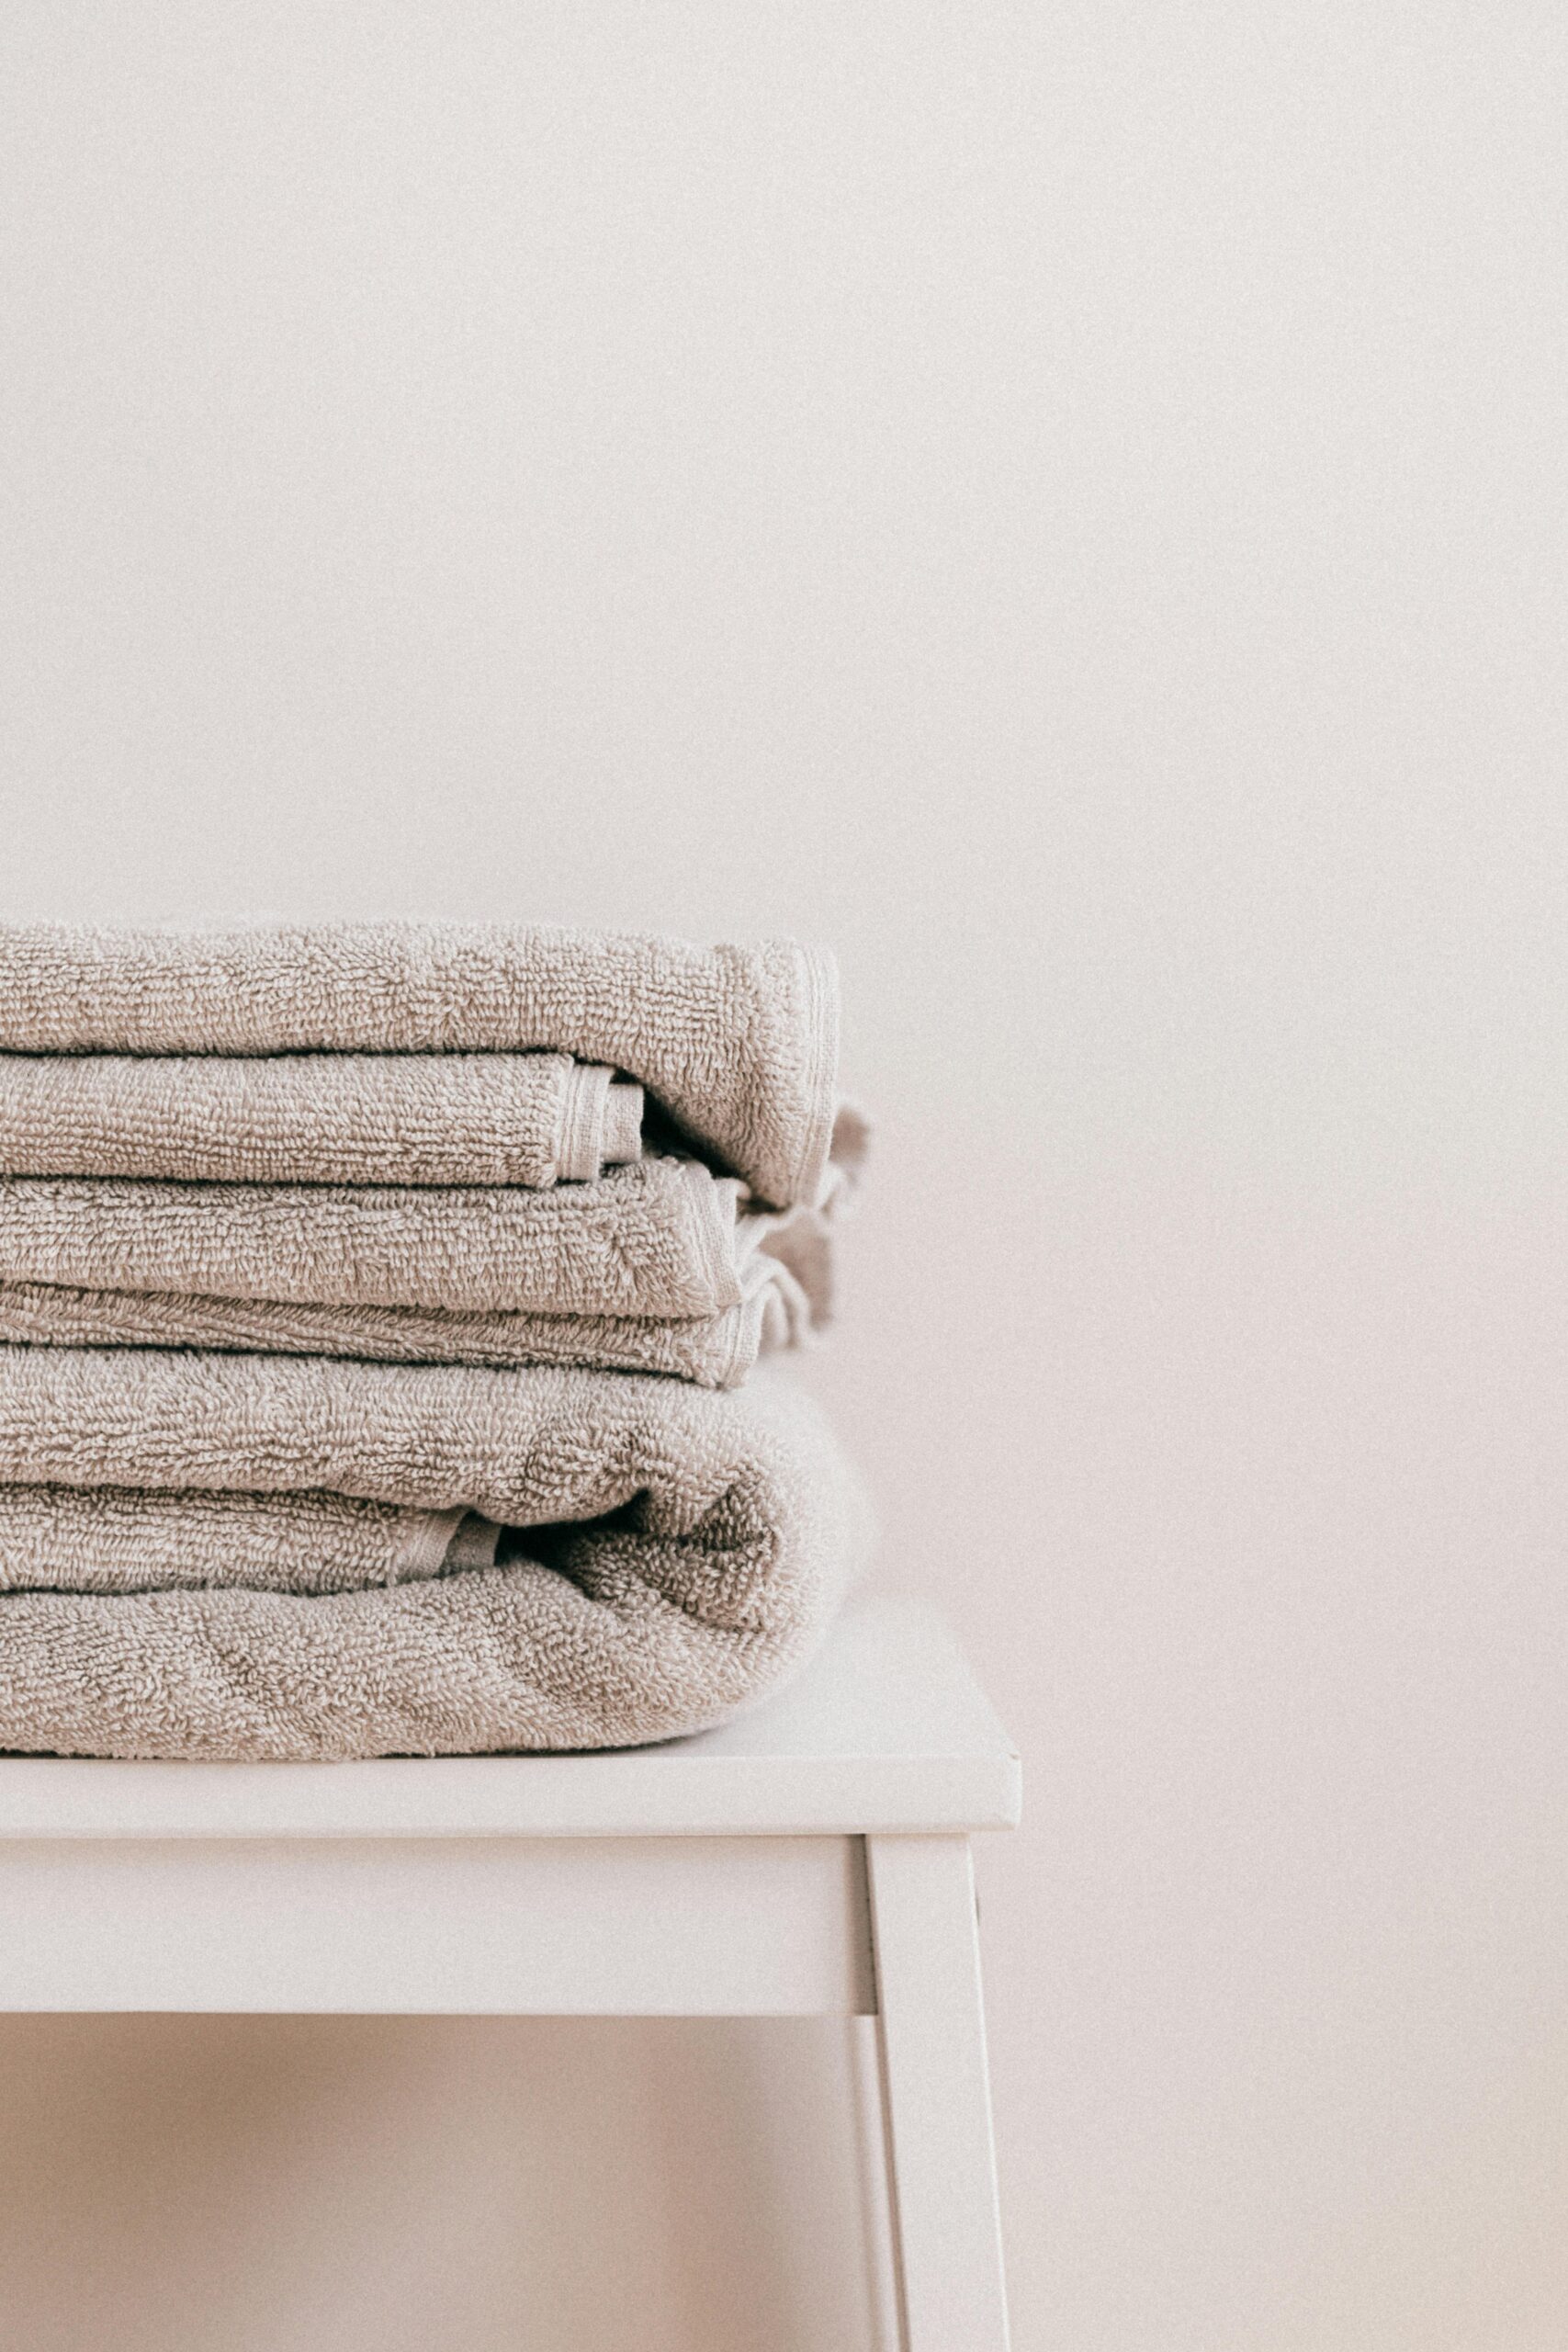 Greige towels